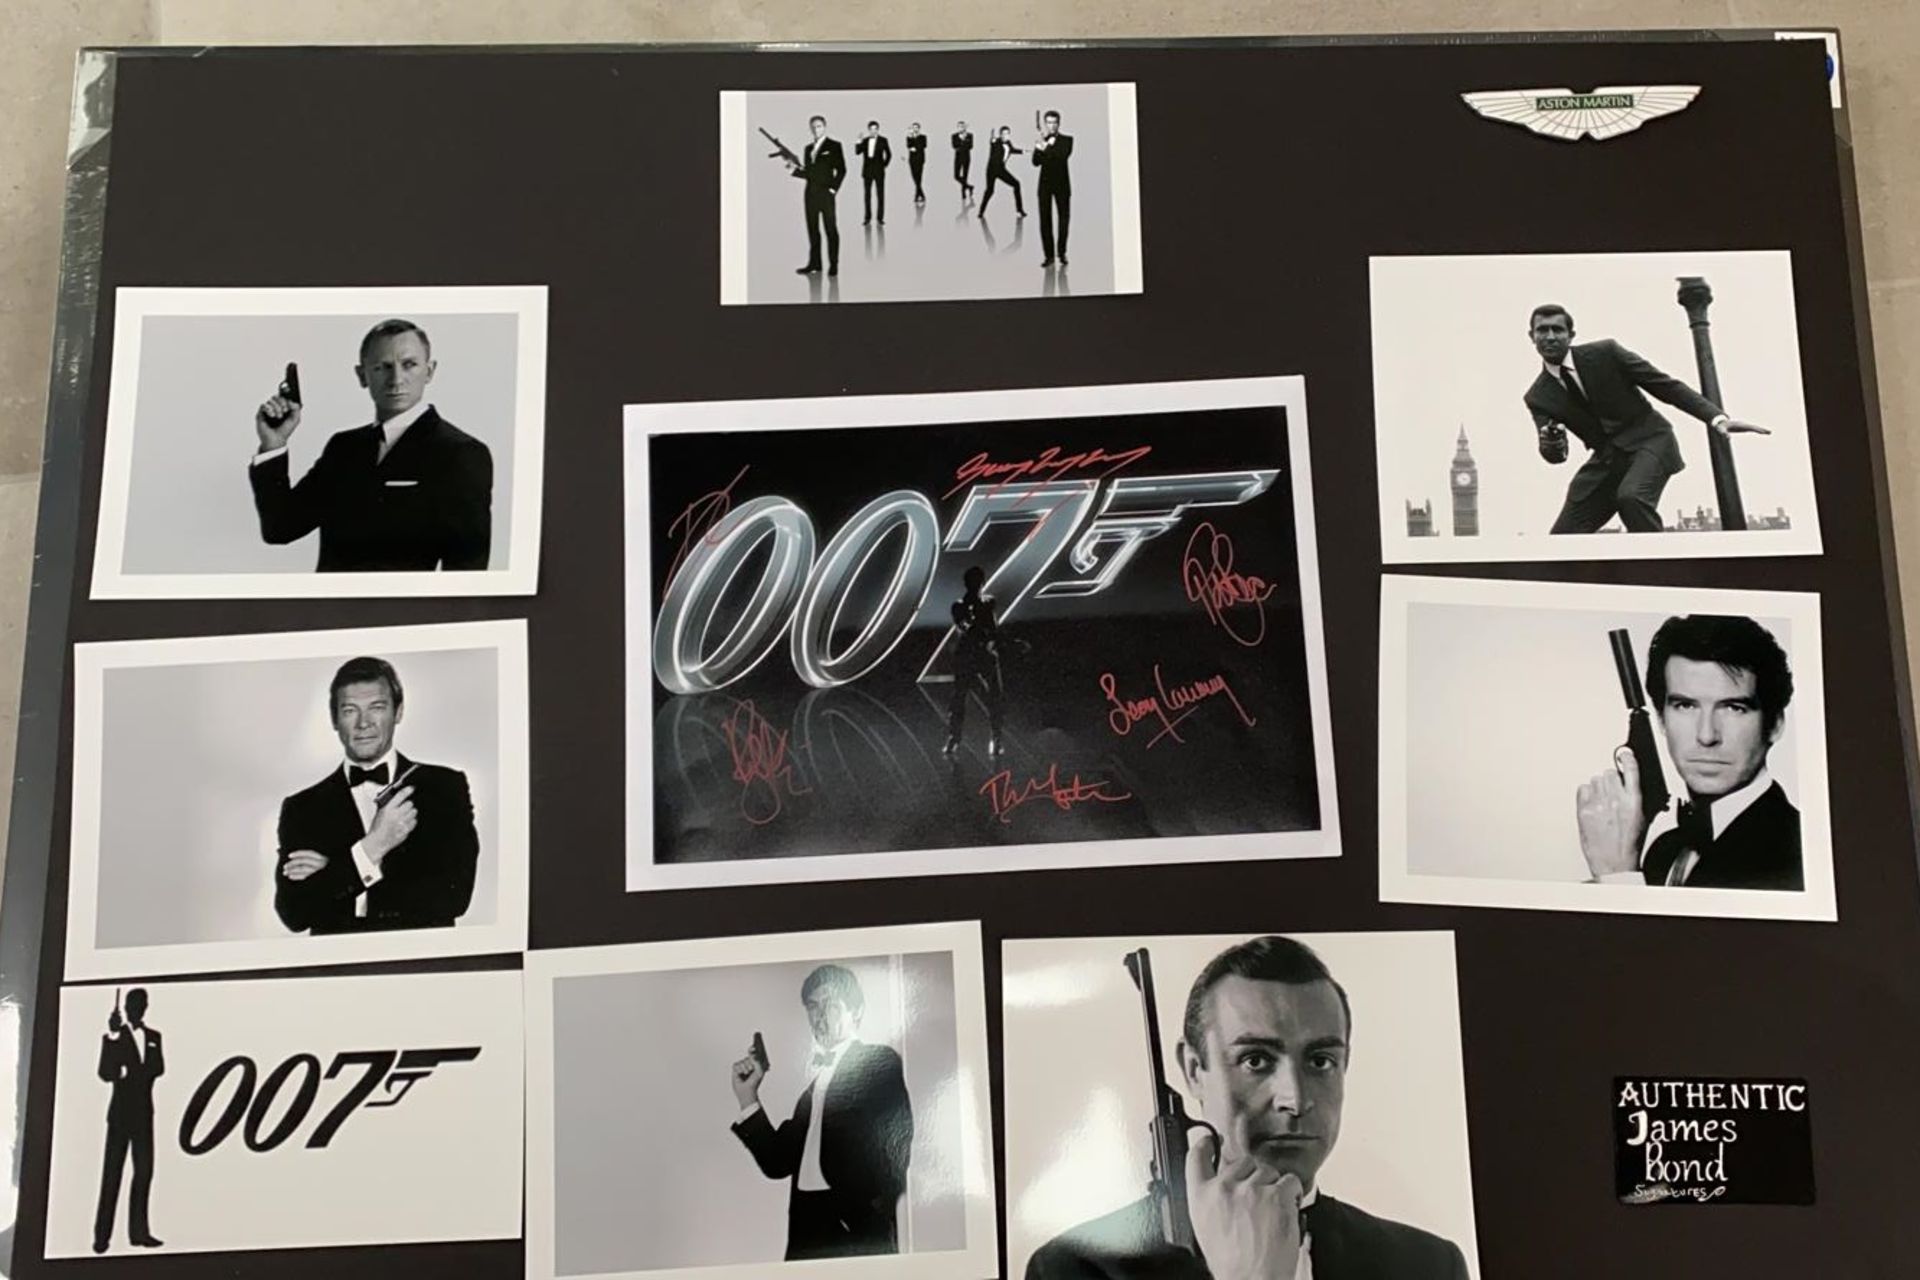 1 x Signed Autograph Picture - JAMES BOND 007 - Multi Cast James Bond Autographs By 6 James Bond